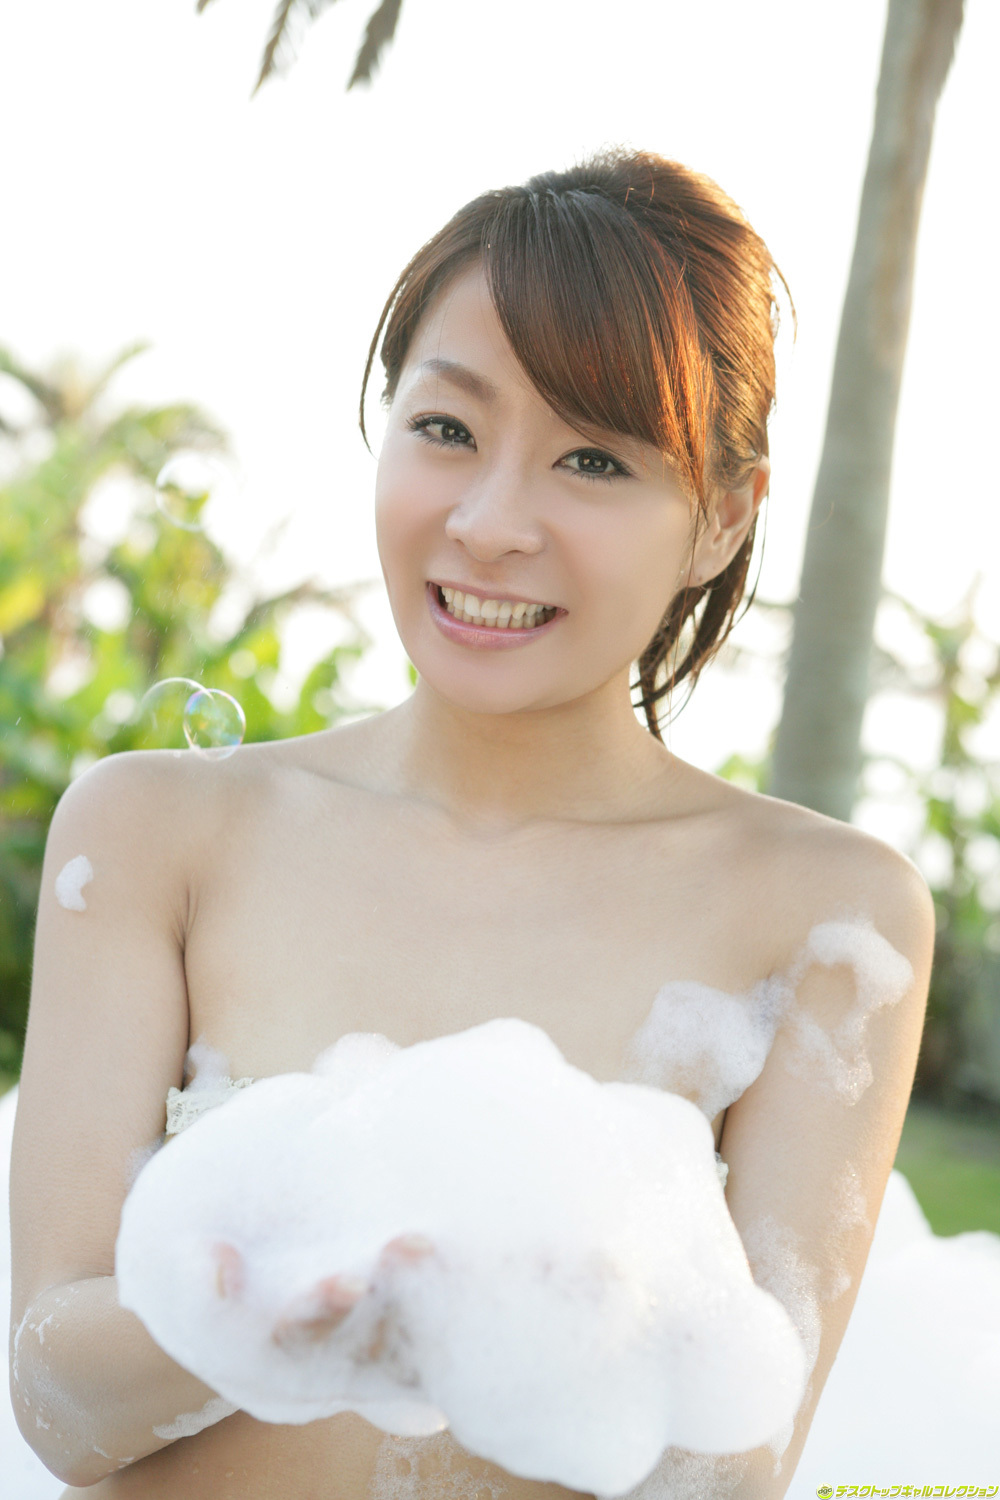 Yuki Aikawa [DGC] April 2012 no.1013 Japanese actress series